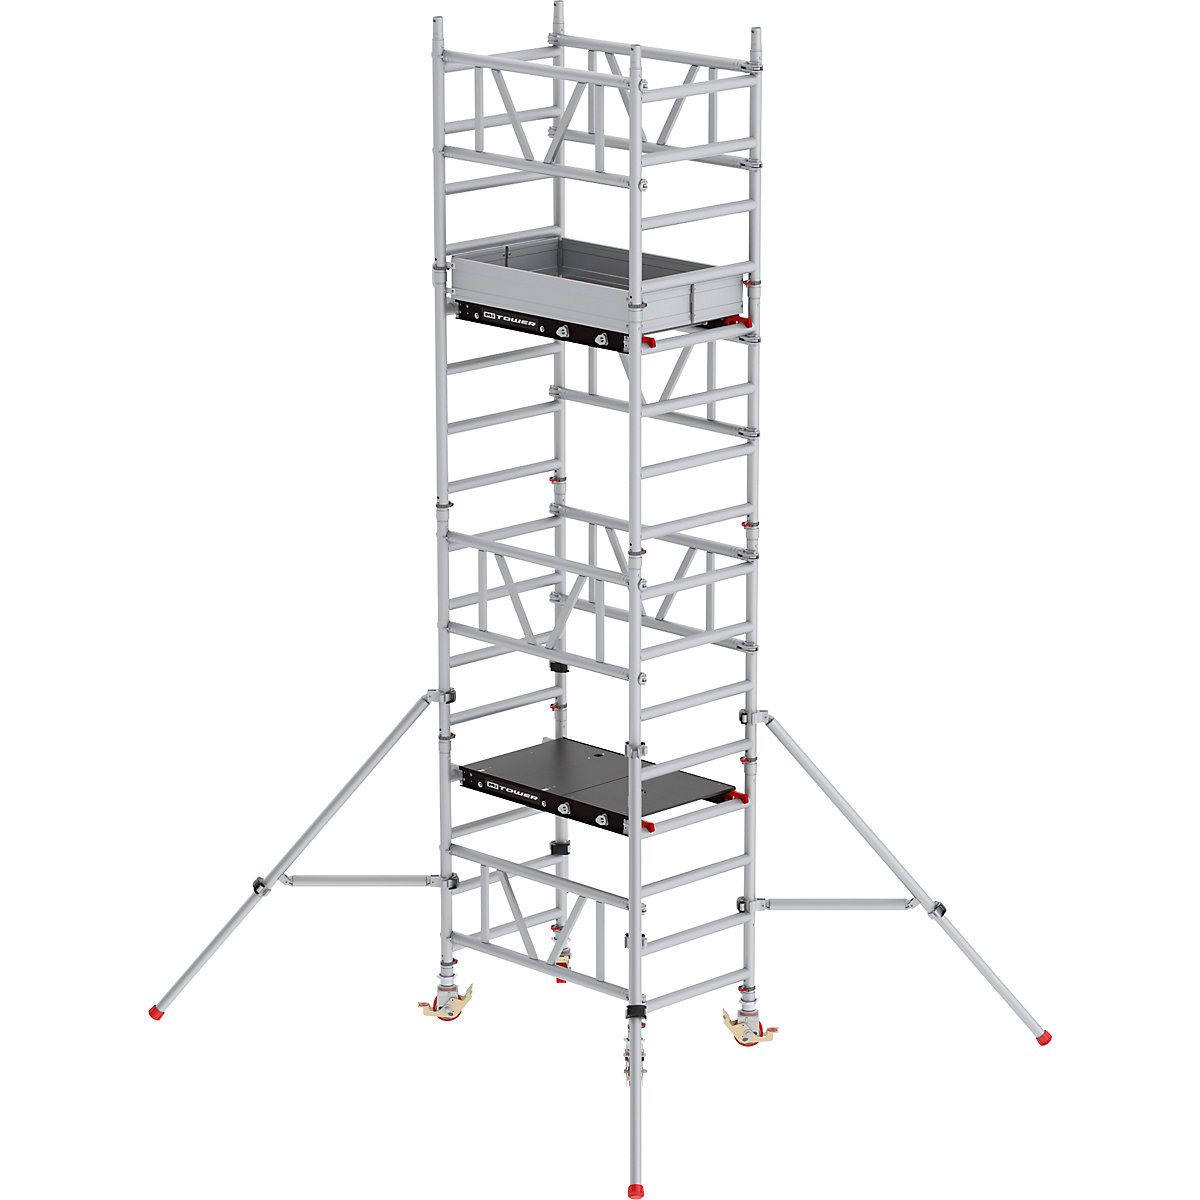 Pomična skela za brzo sastavljanje MiTOWER Standard – Altrex, platforma Fiber-Deck®, DxŠ 1200 x 750 mm, radna visina 5 m-25